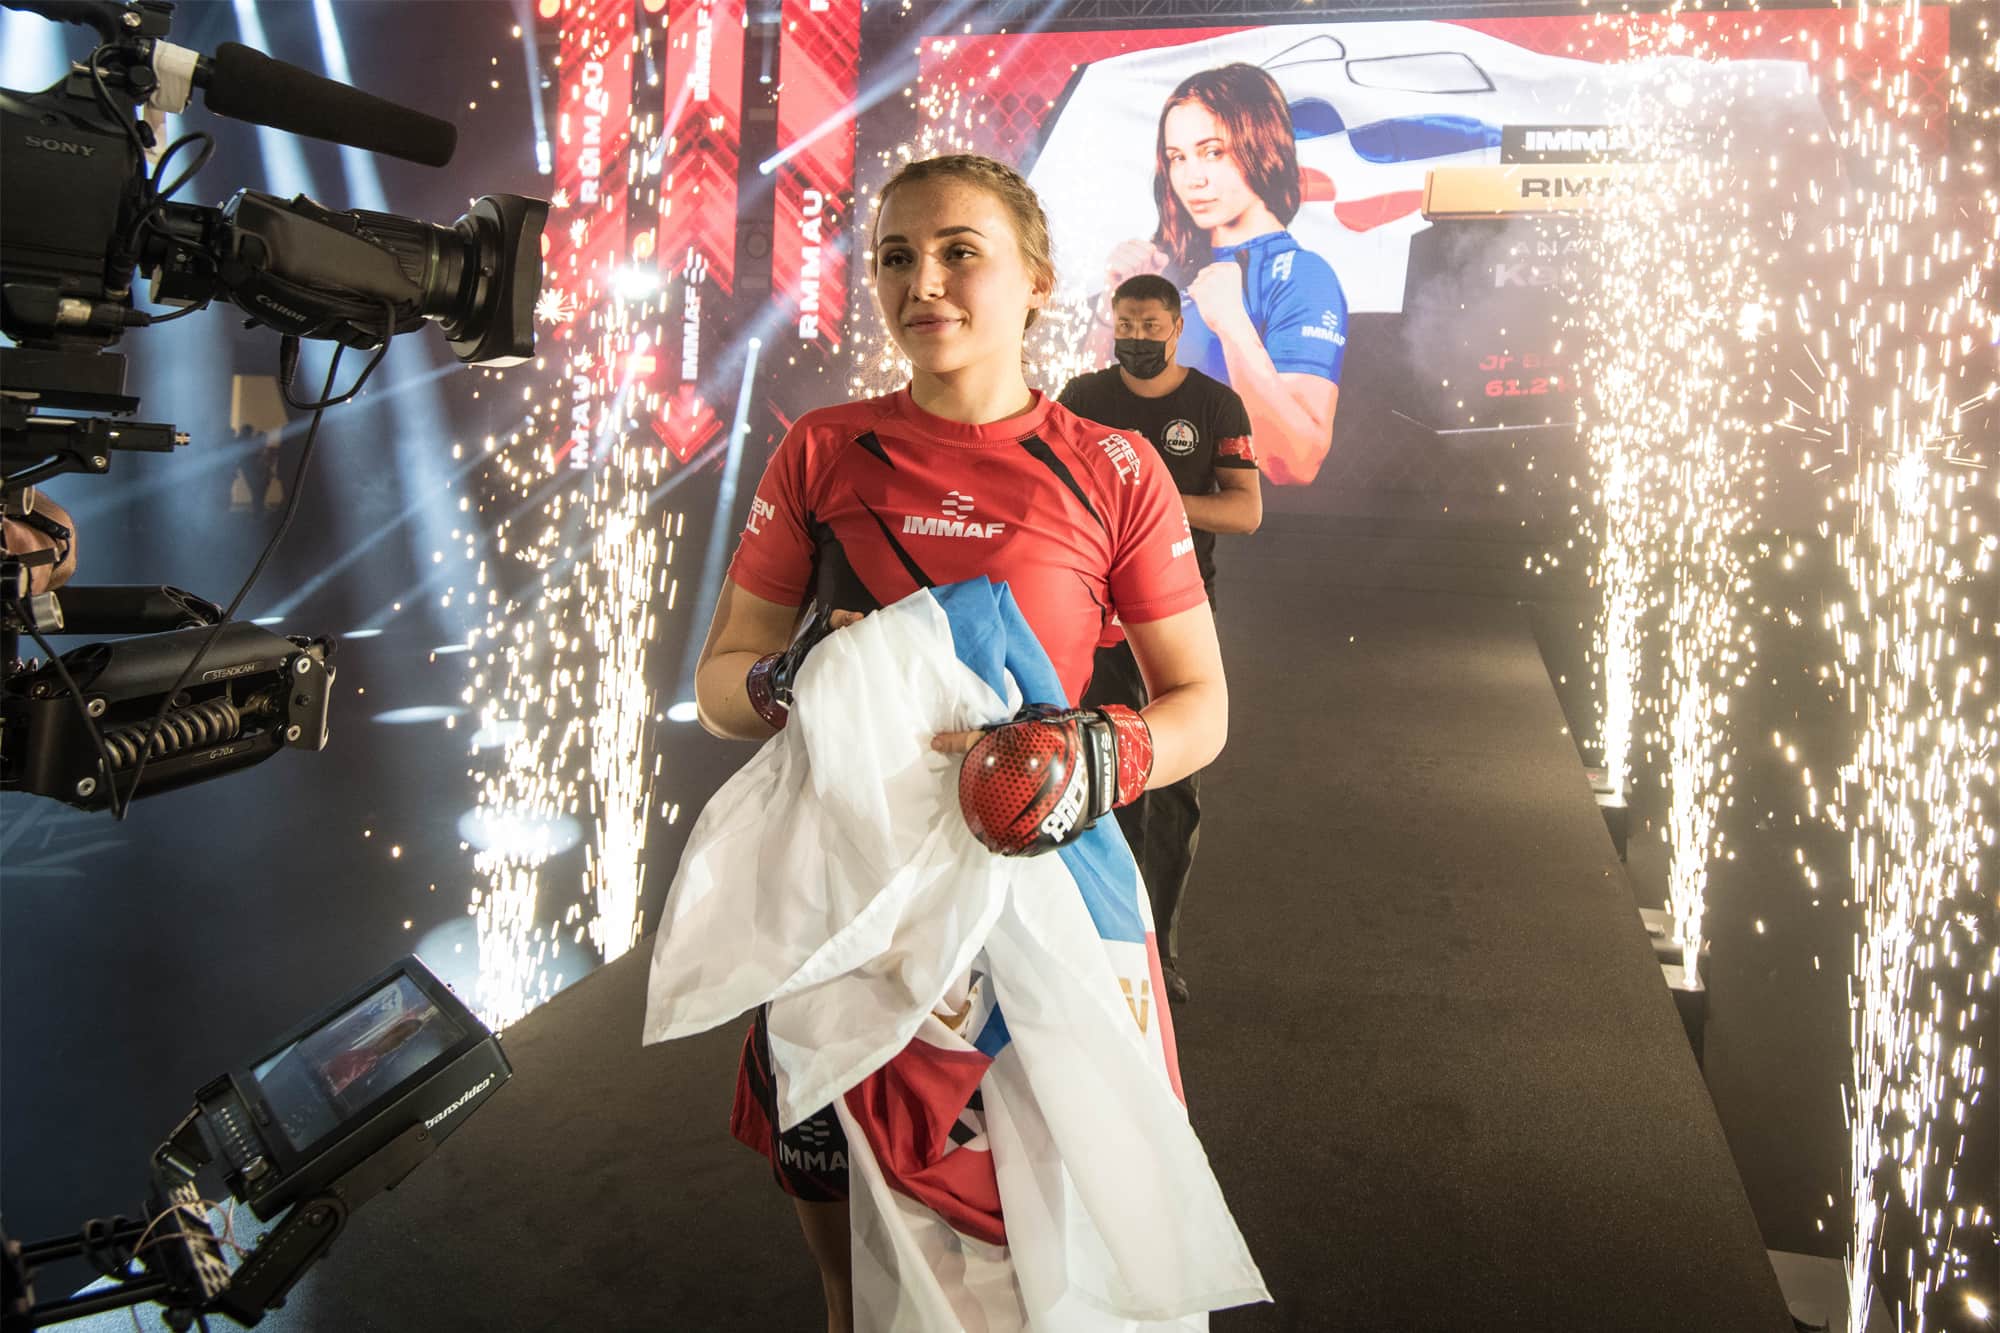 Anastasiya Karmaeva wins gold as RMMAU dominates Junior Finals day at 2021 IMMAF World Championships